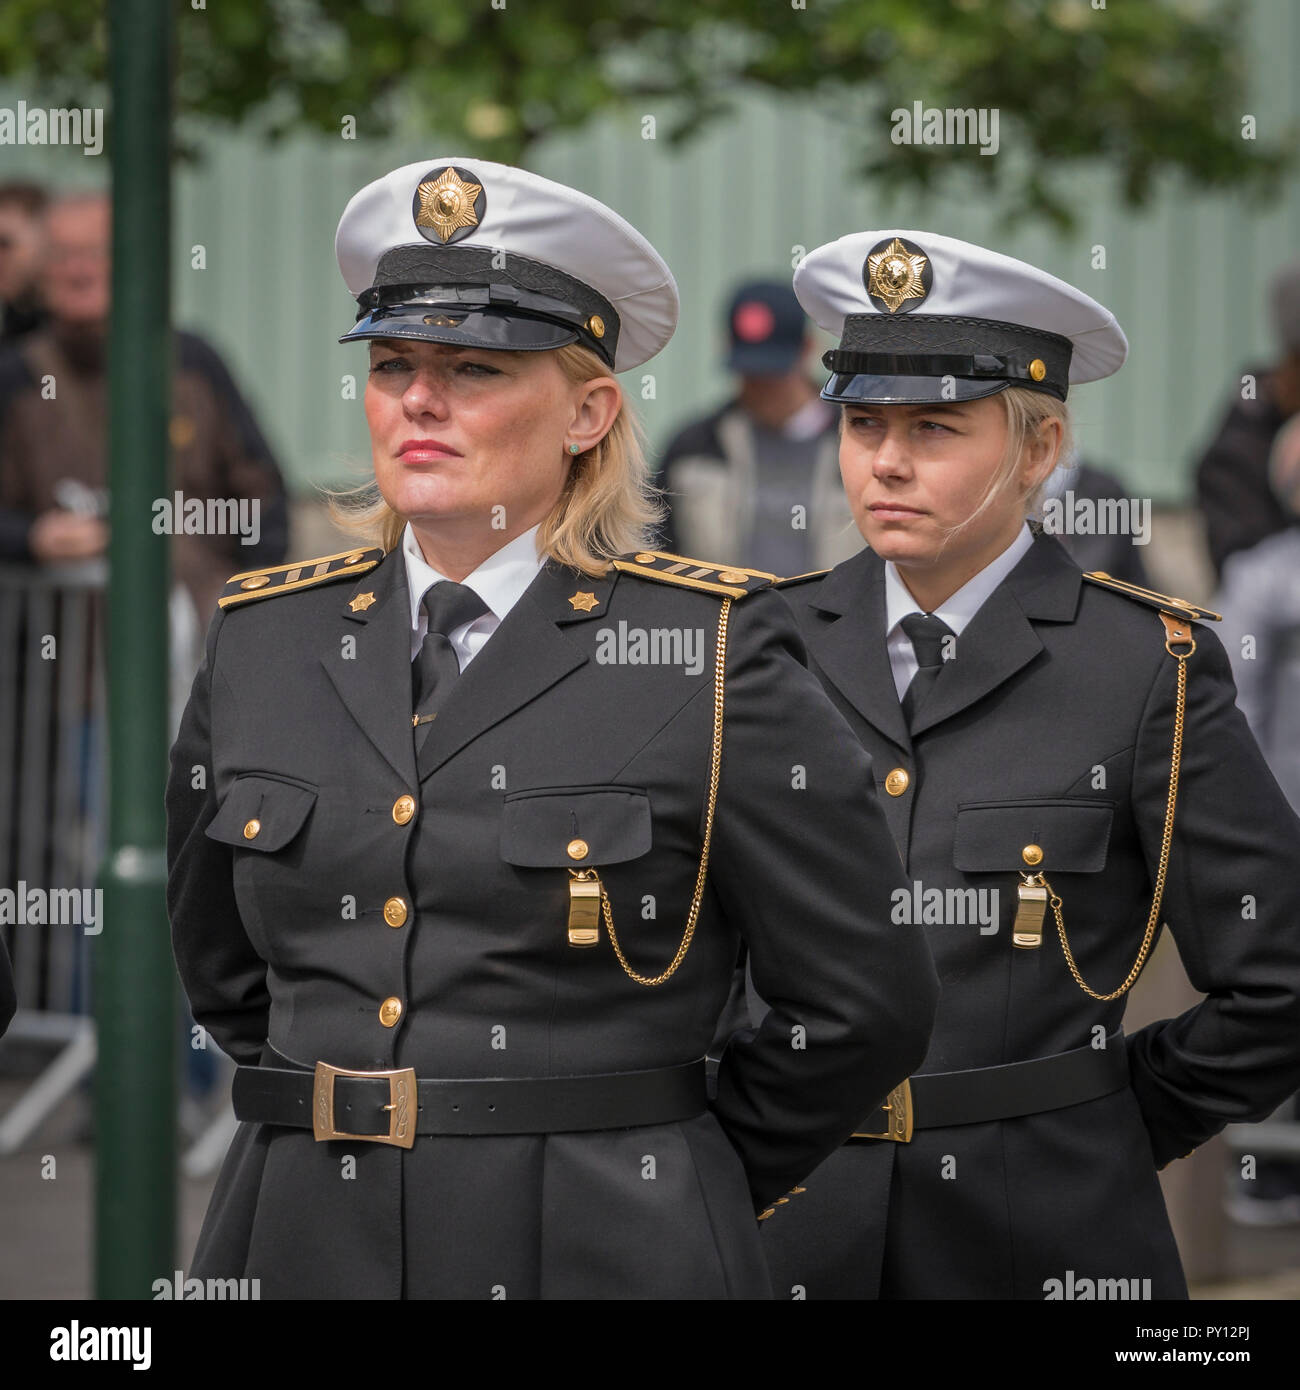 La police islandaise femelle habillé de l'uniforme, au cours du jour de l'indépendance de l'Islande, Reykjavik, Islande Banque D'Images